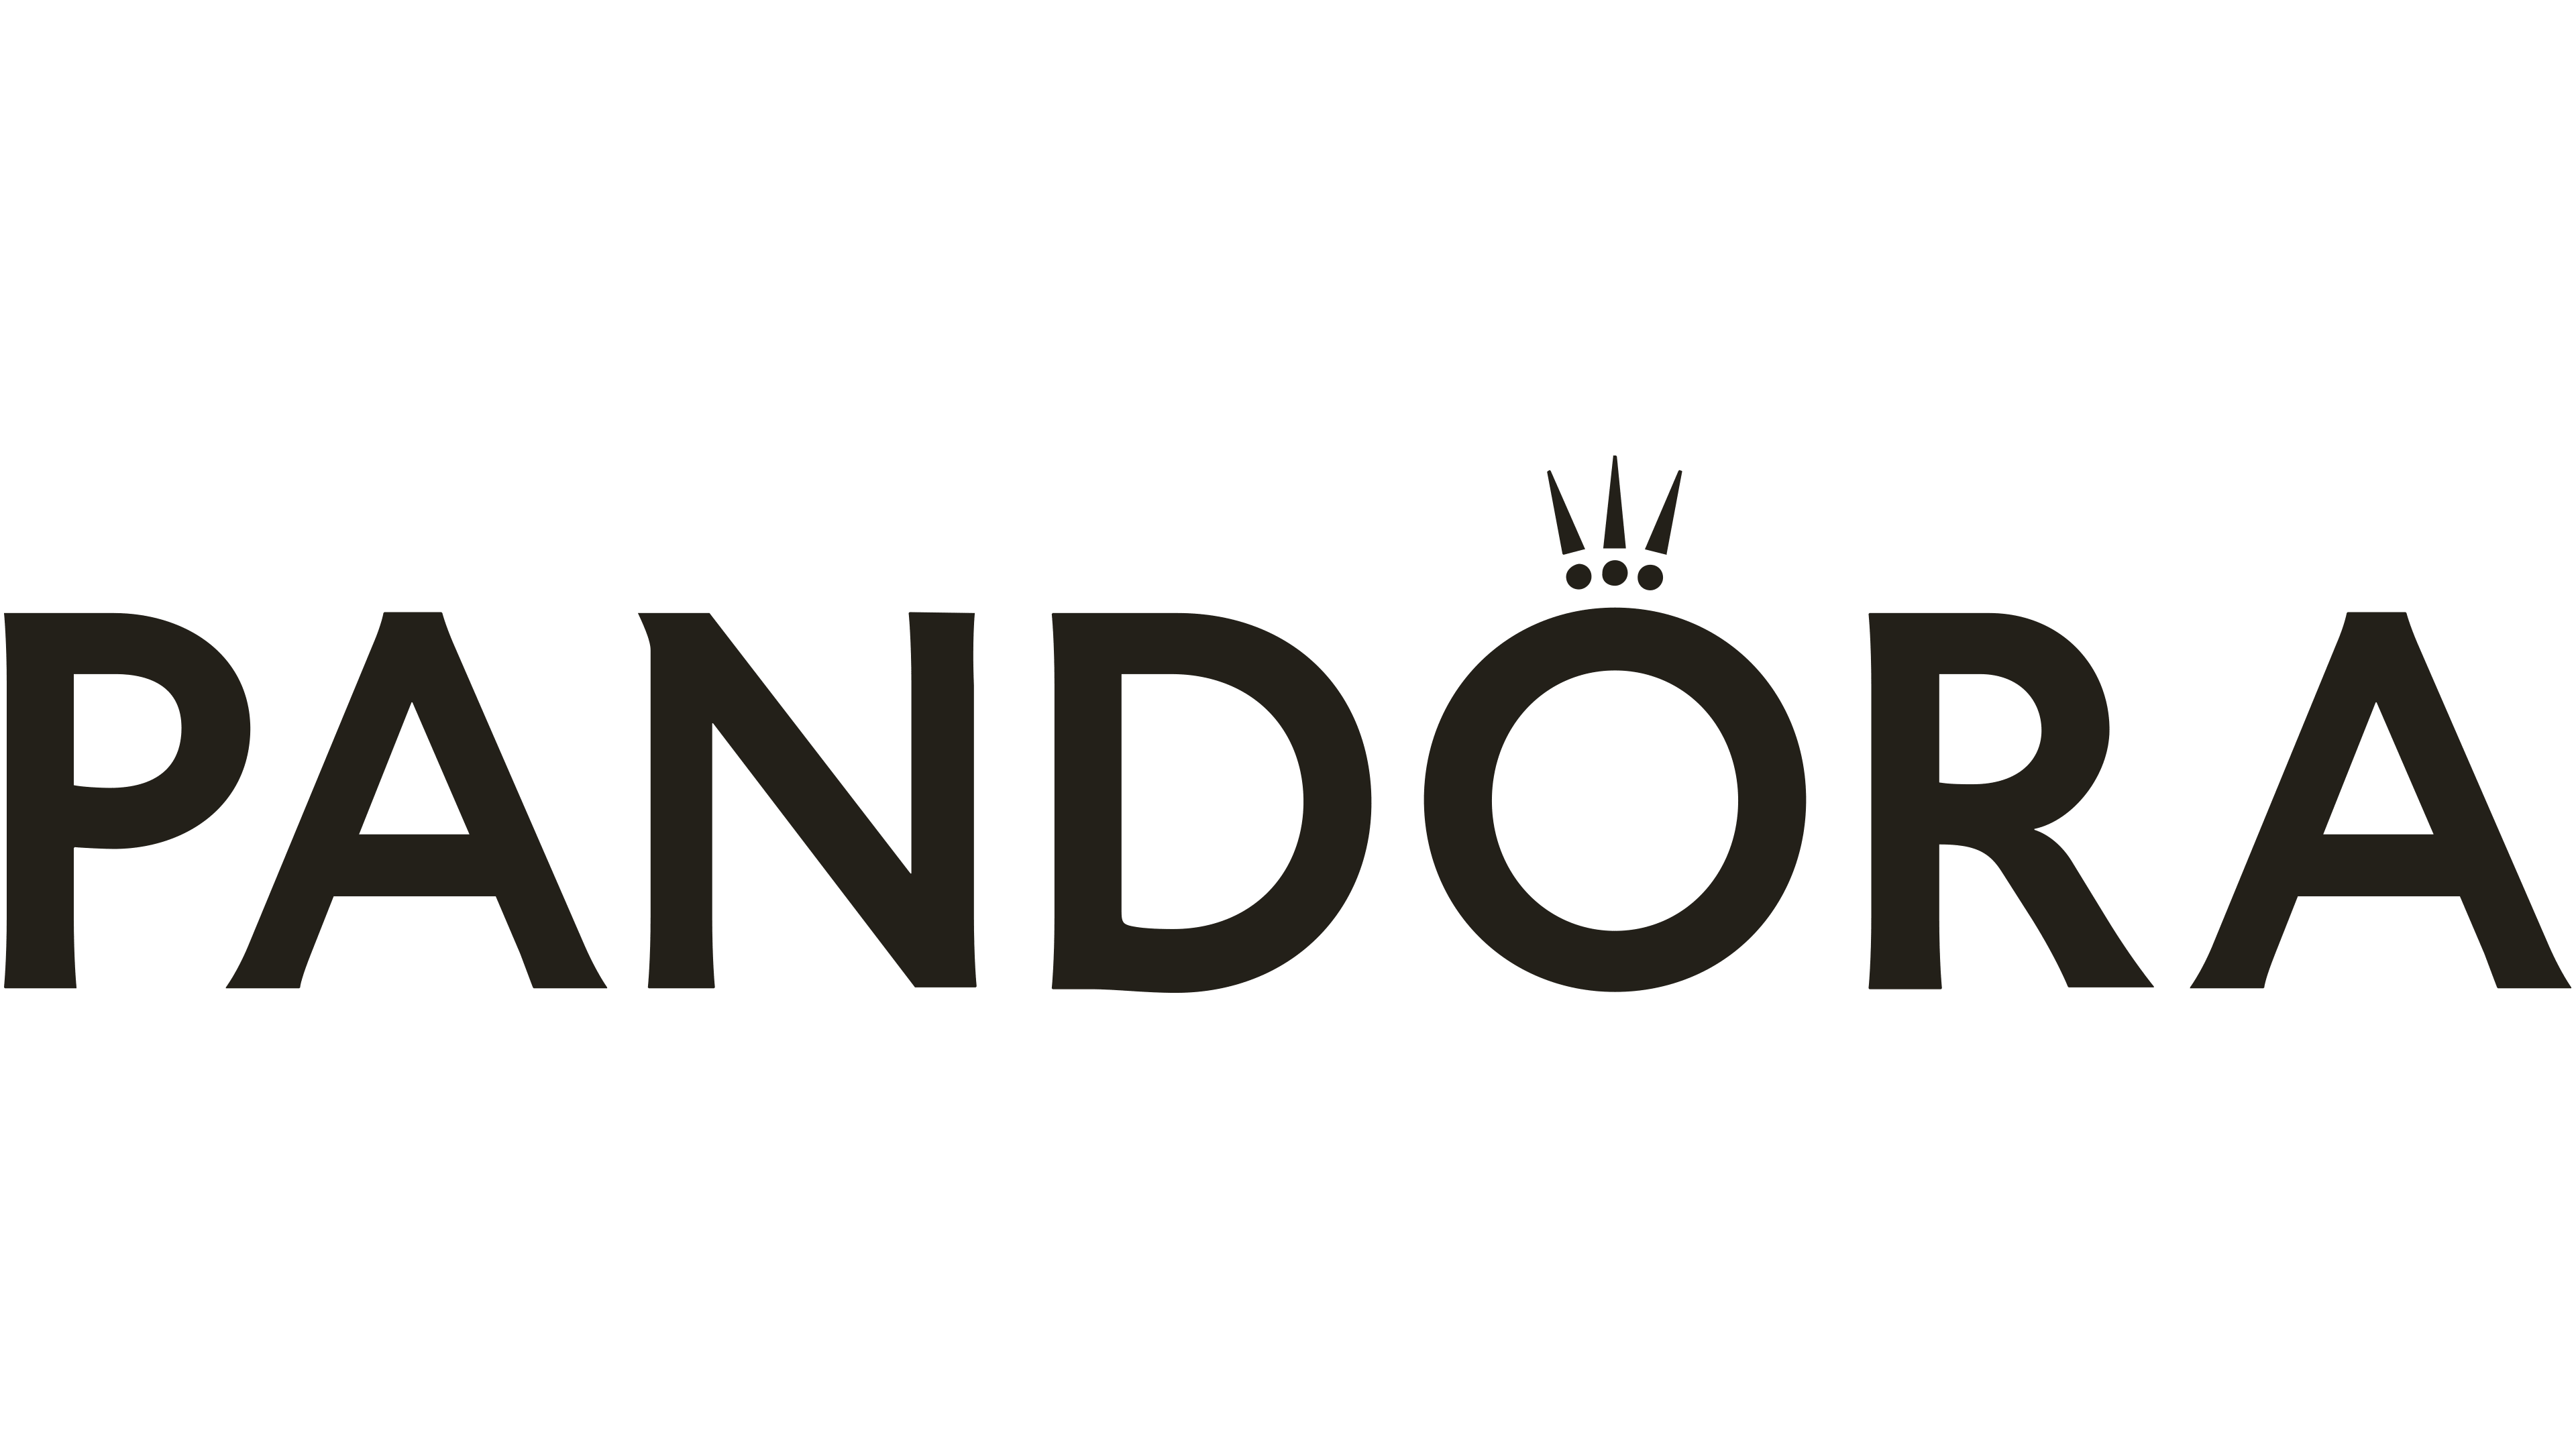 Pandora DE